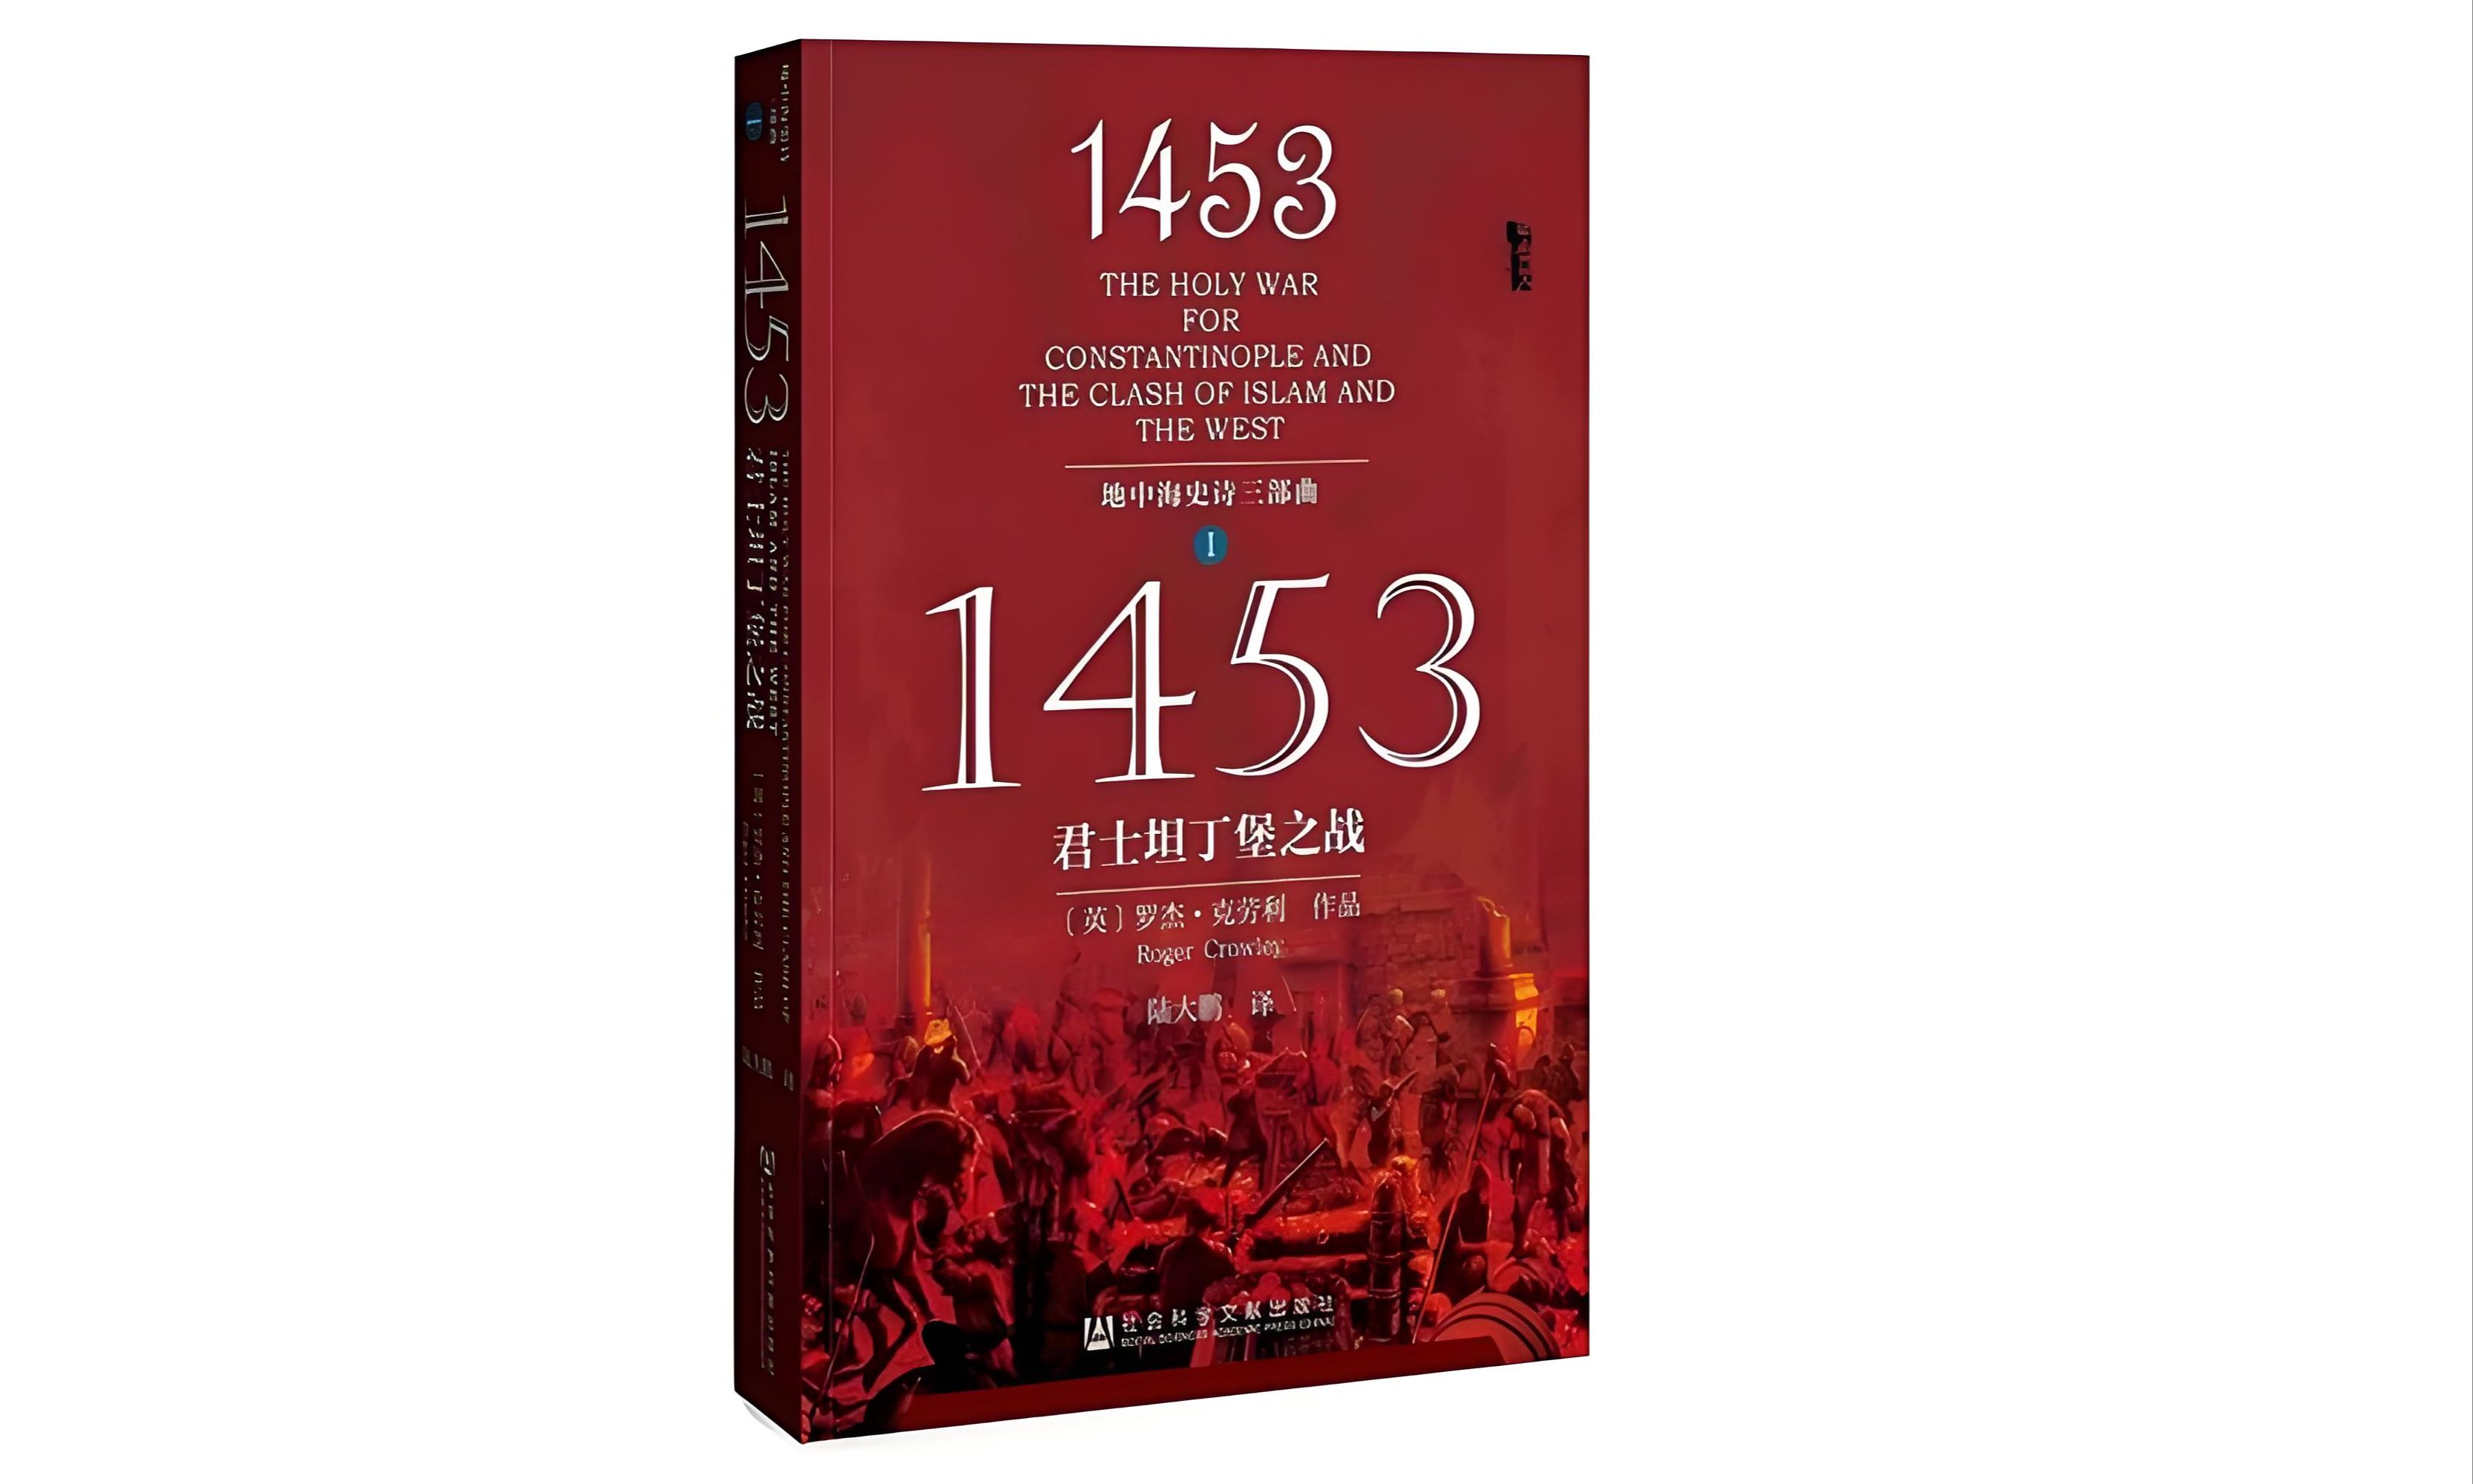 真人朗读有声书《1453君士坦丁之战》地中海史诗三部曲